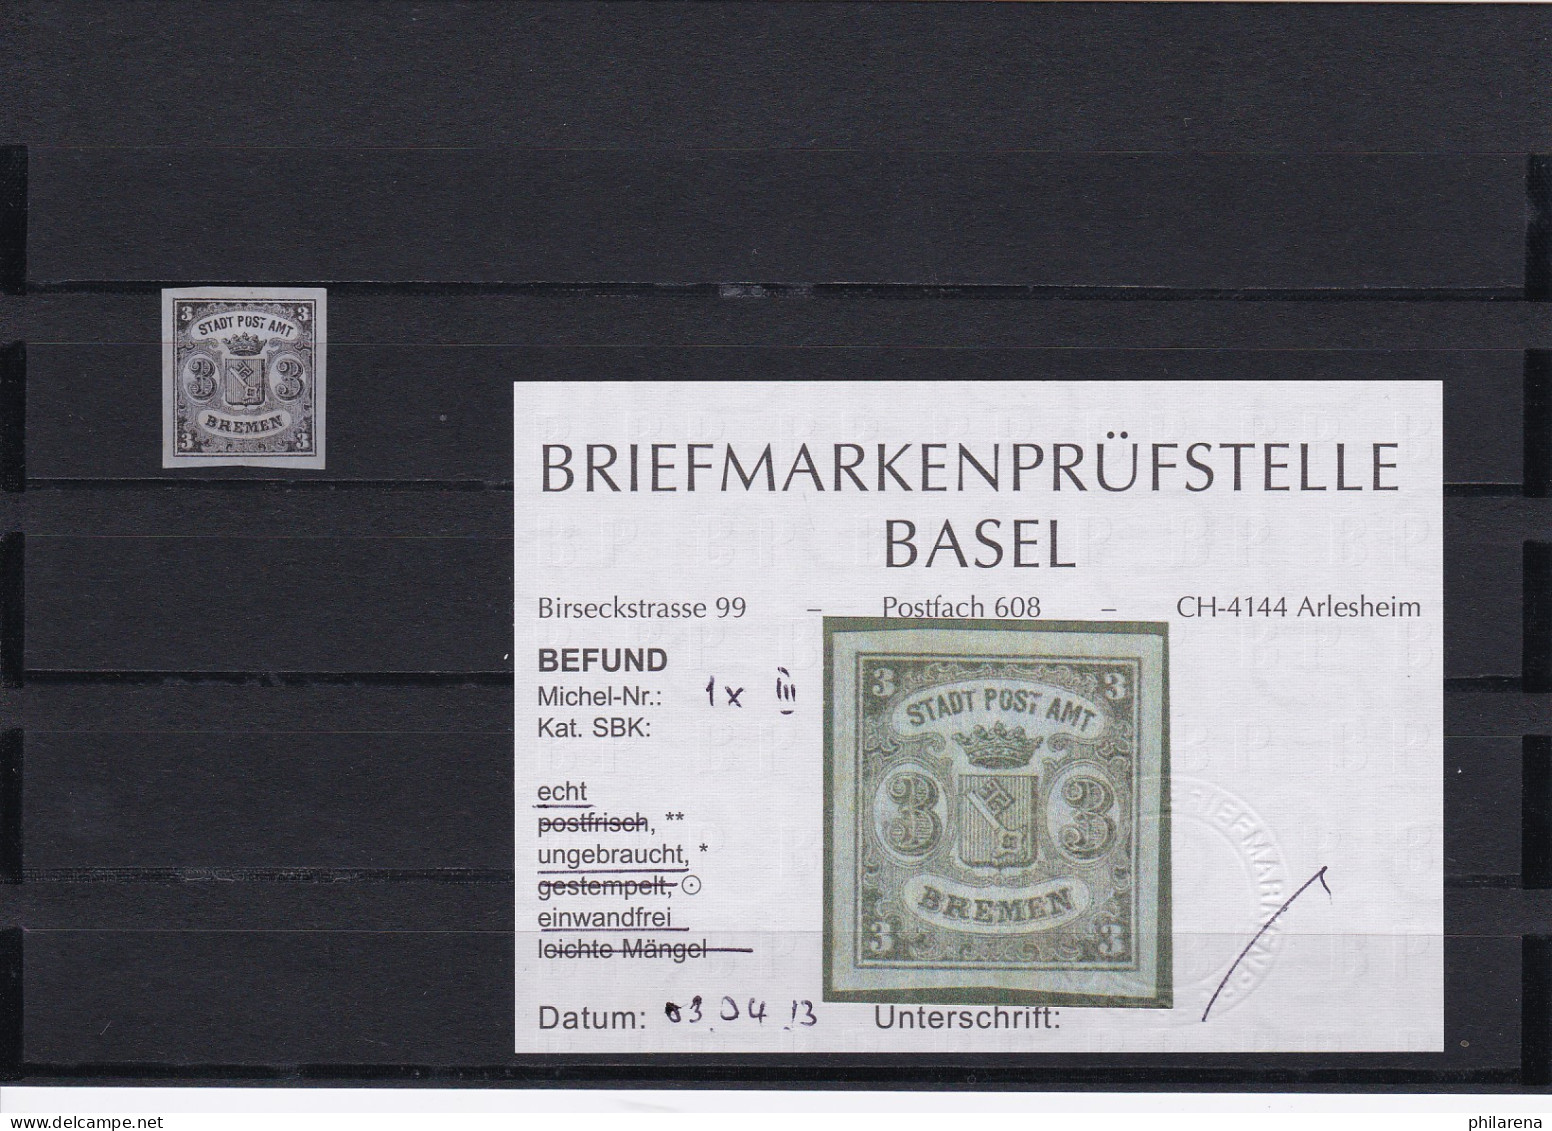 Bremen: Stadt Post Amt, Nr. 1x III, Ungebraucht - Brême